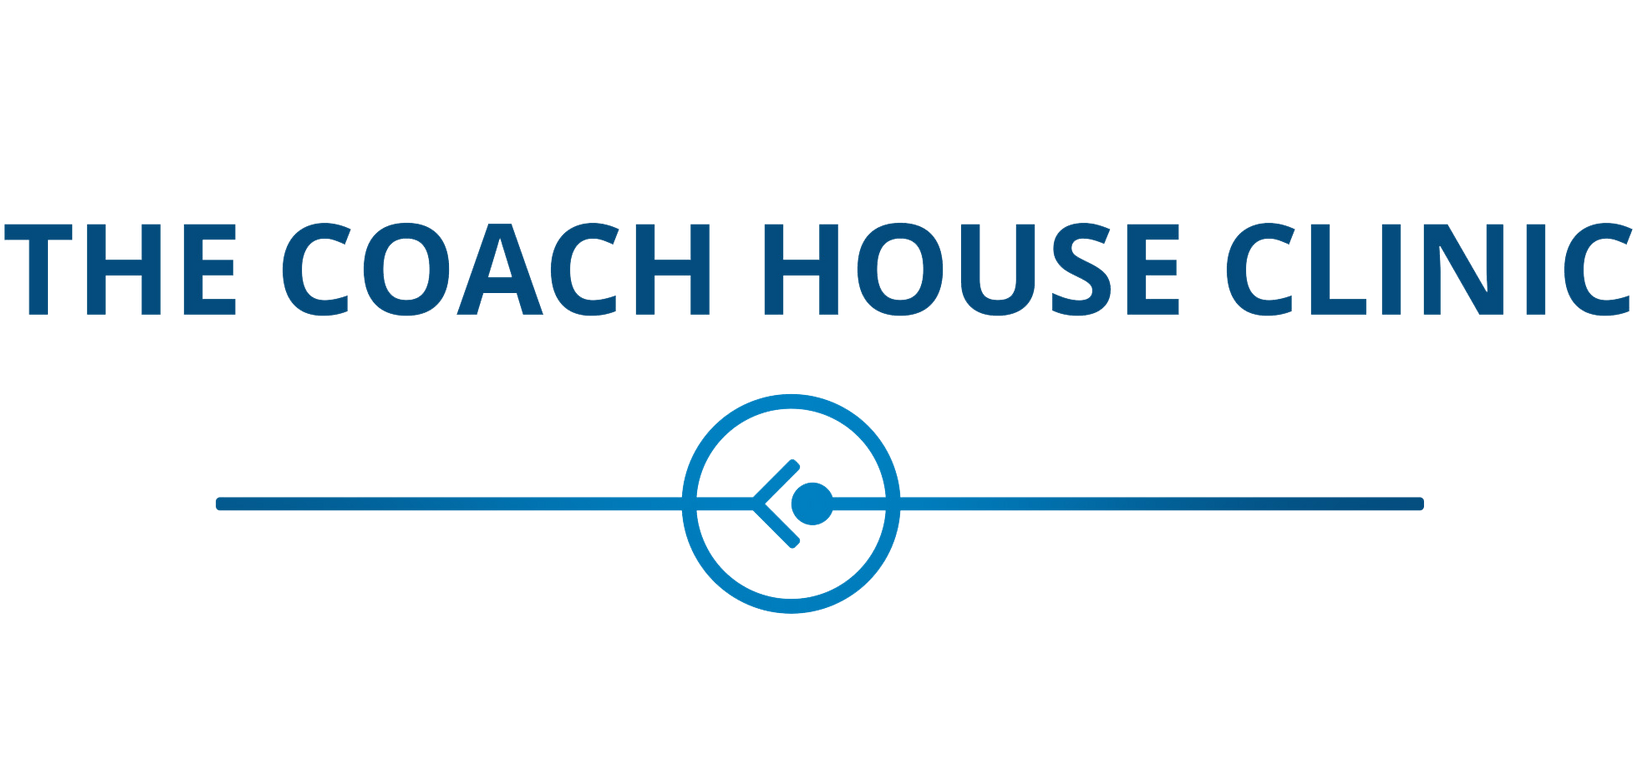 The coach house clinic logo